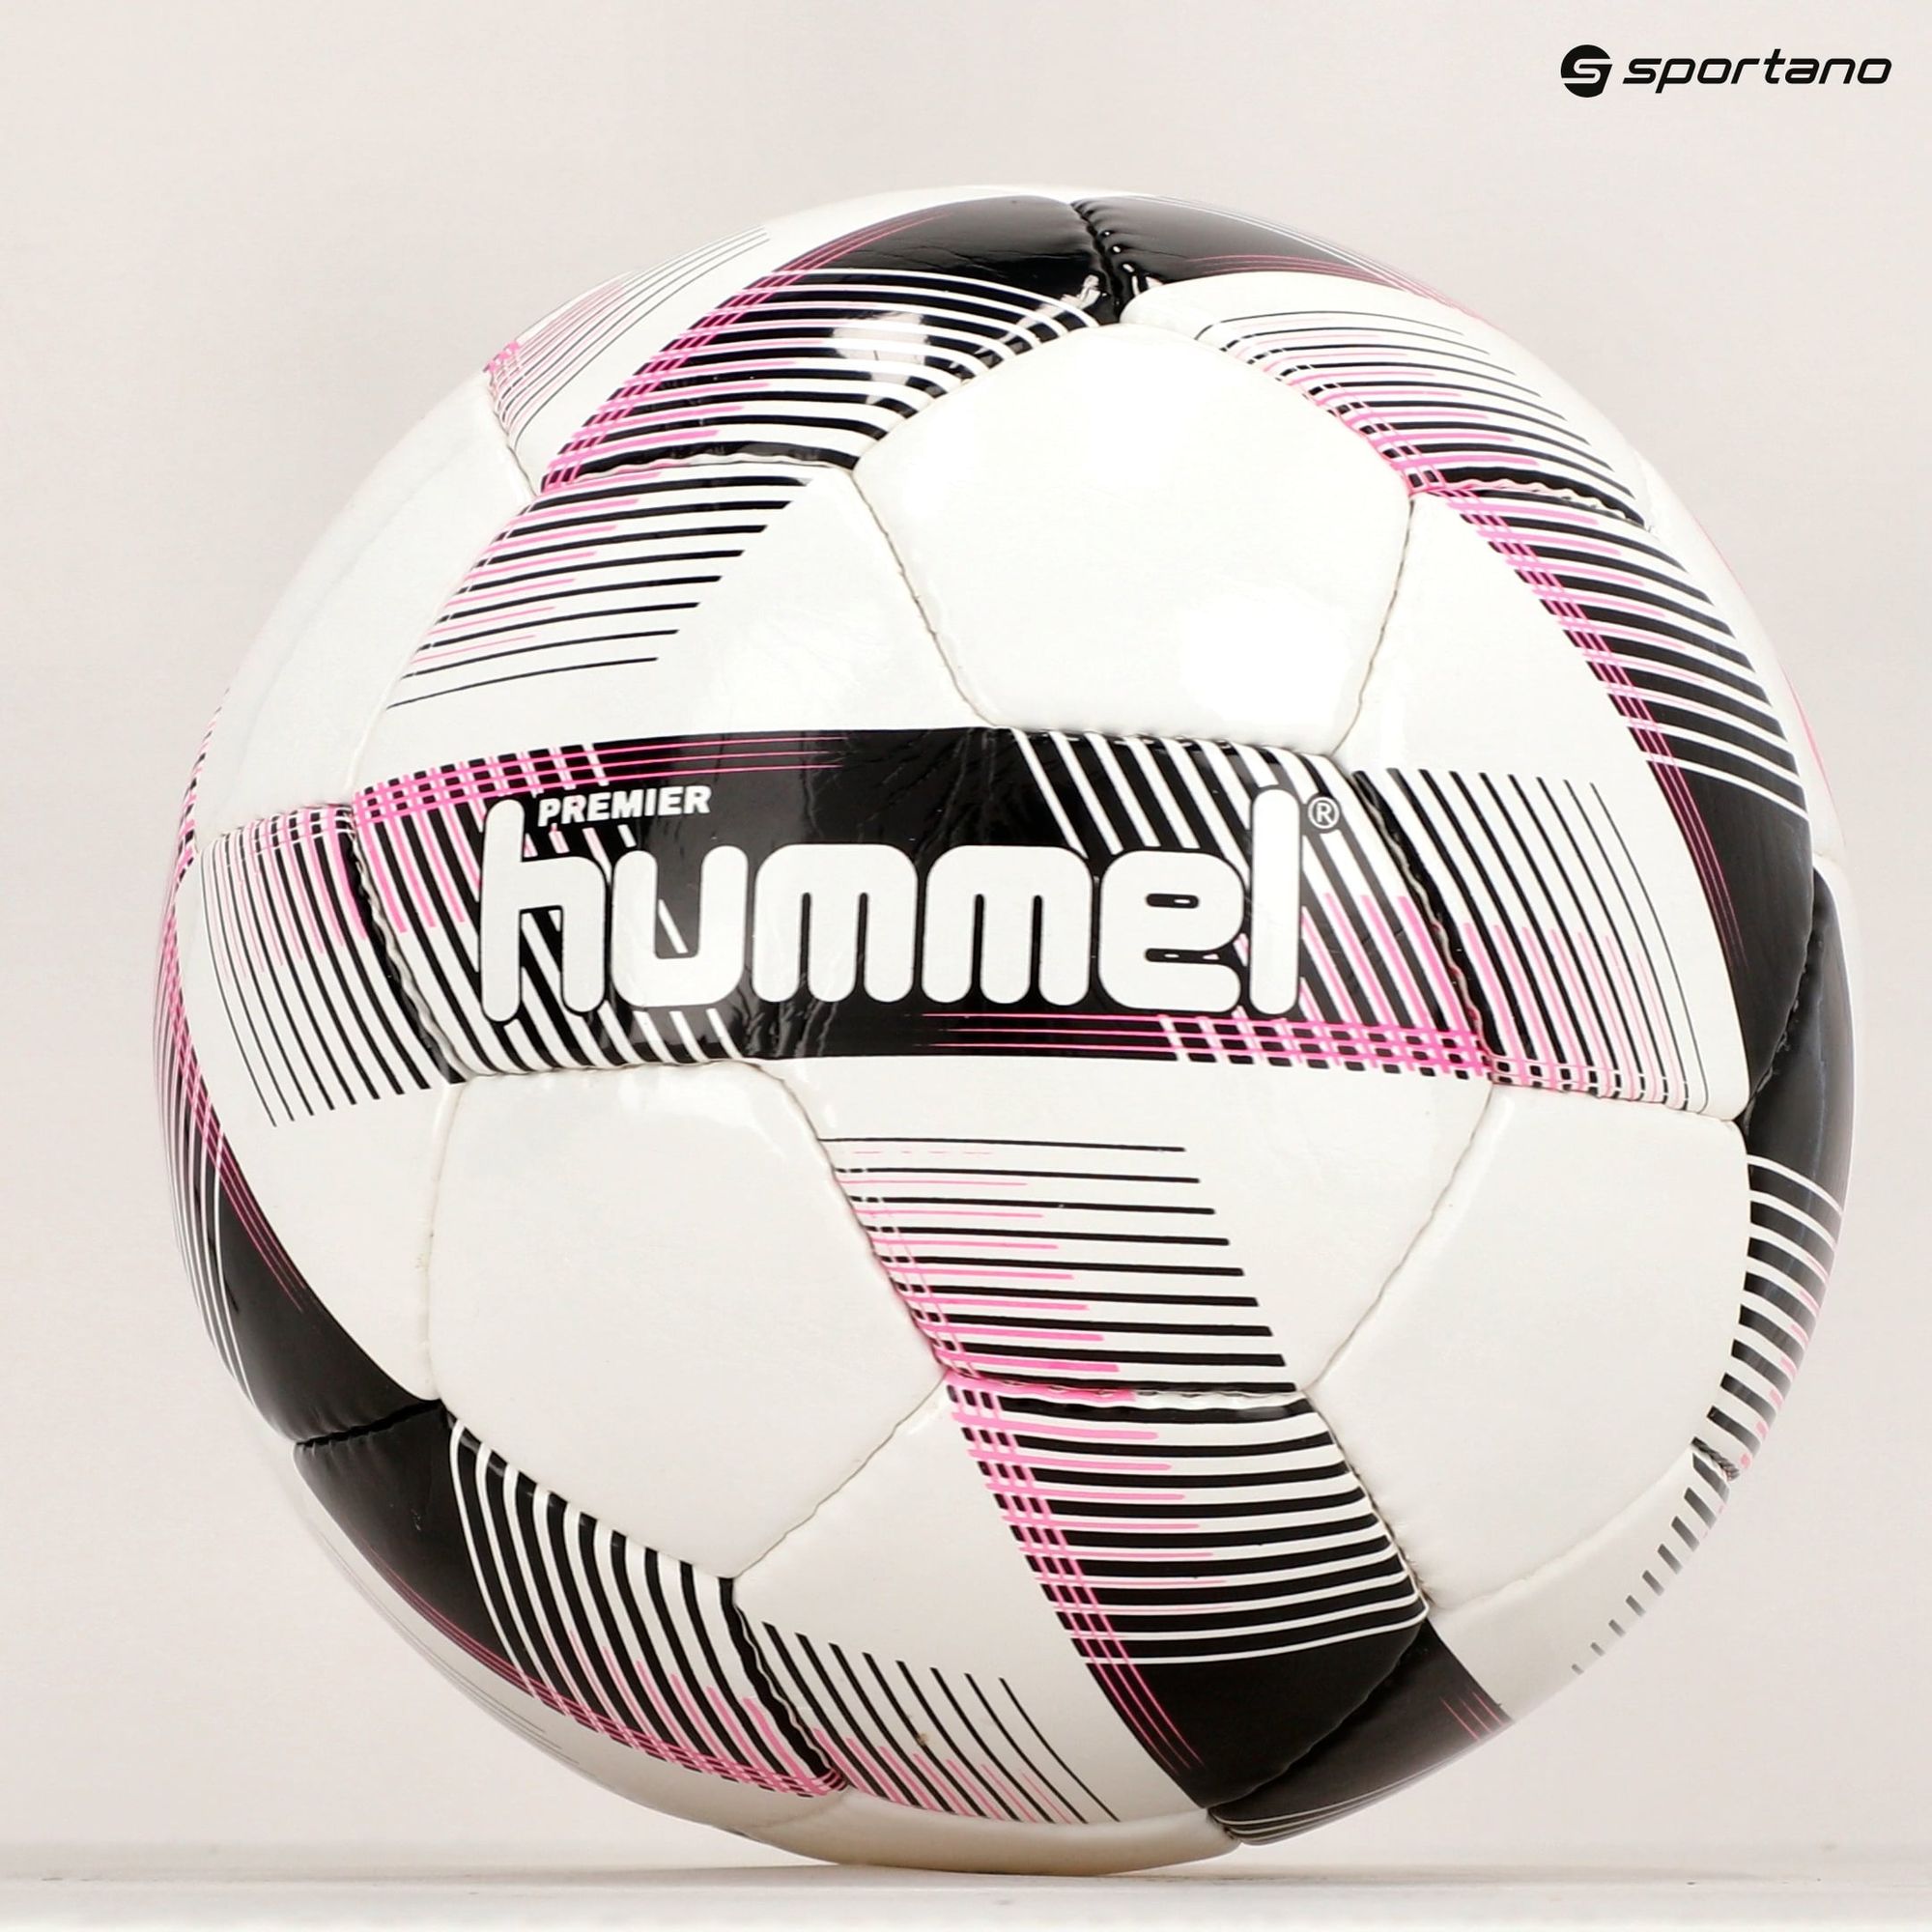 Piłka do piłki nożnej Hummel Premier FB white/black/pink rozmiar 5 zdjęcie nr 5